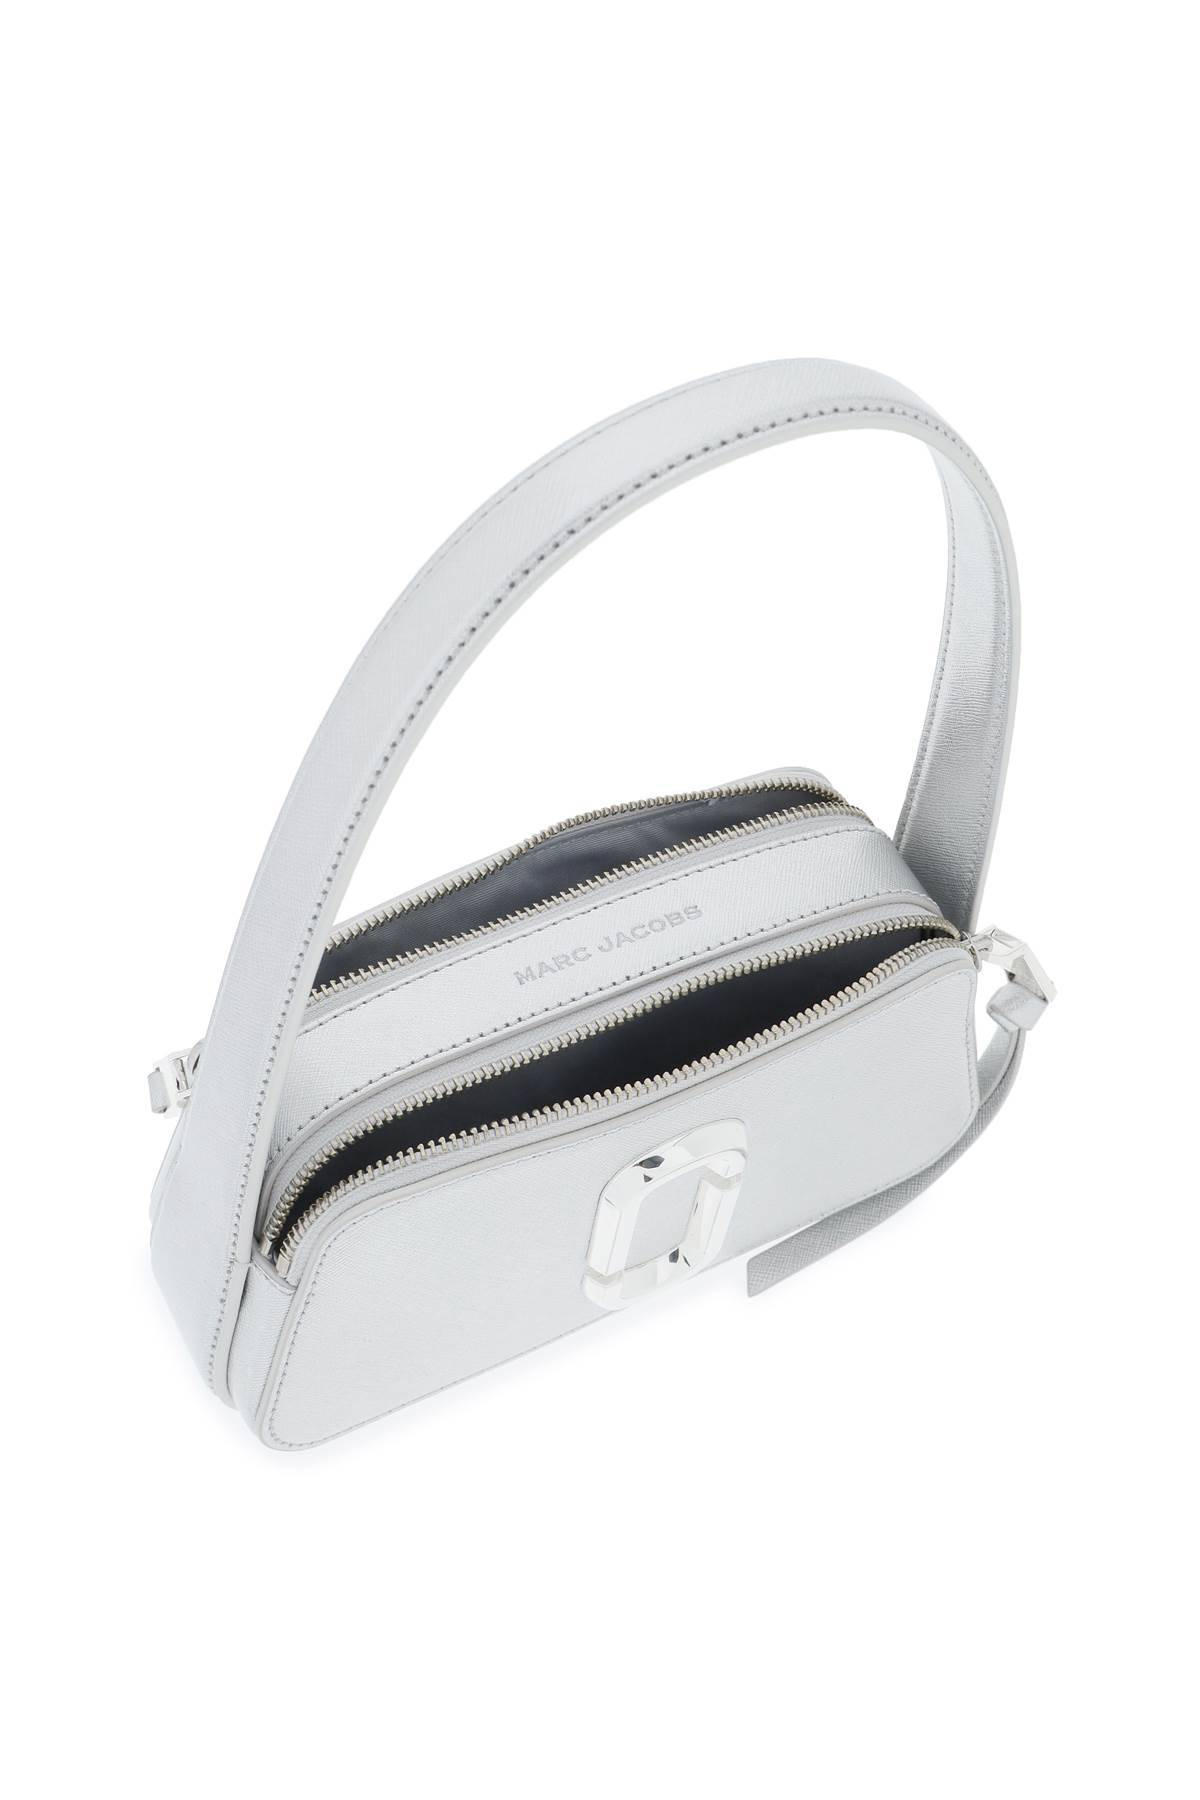 Shop Marc Jacobs 'the Metallic Slingshot' Shoulder Bag In Silver